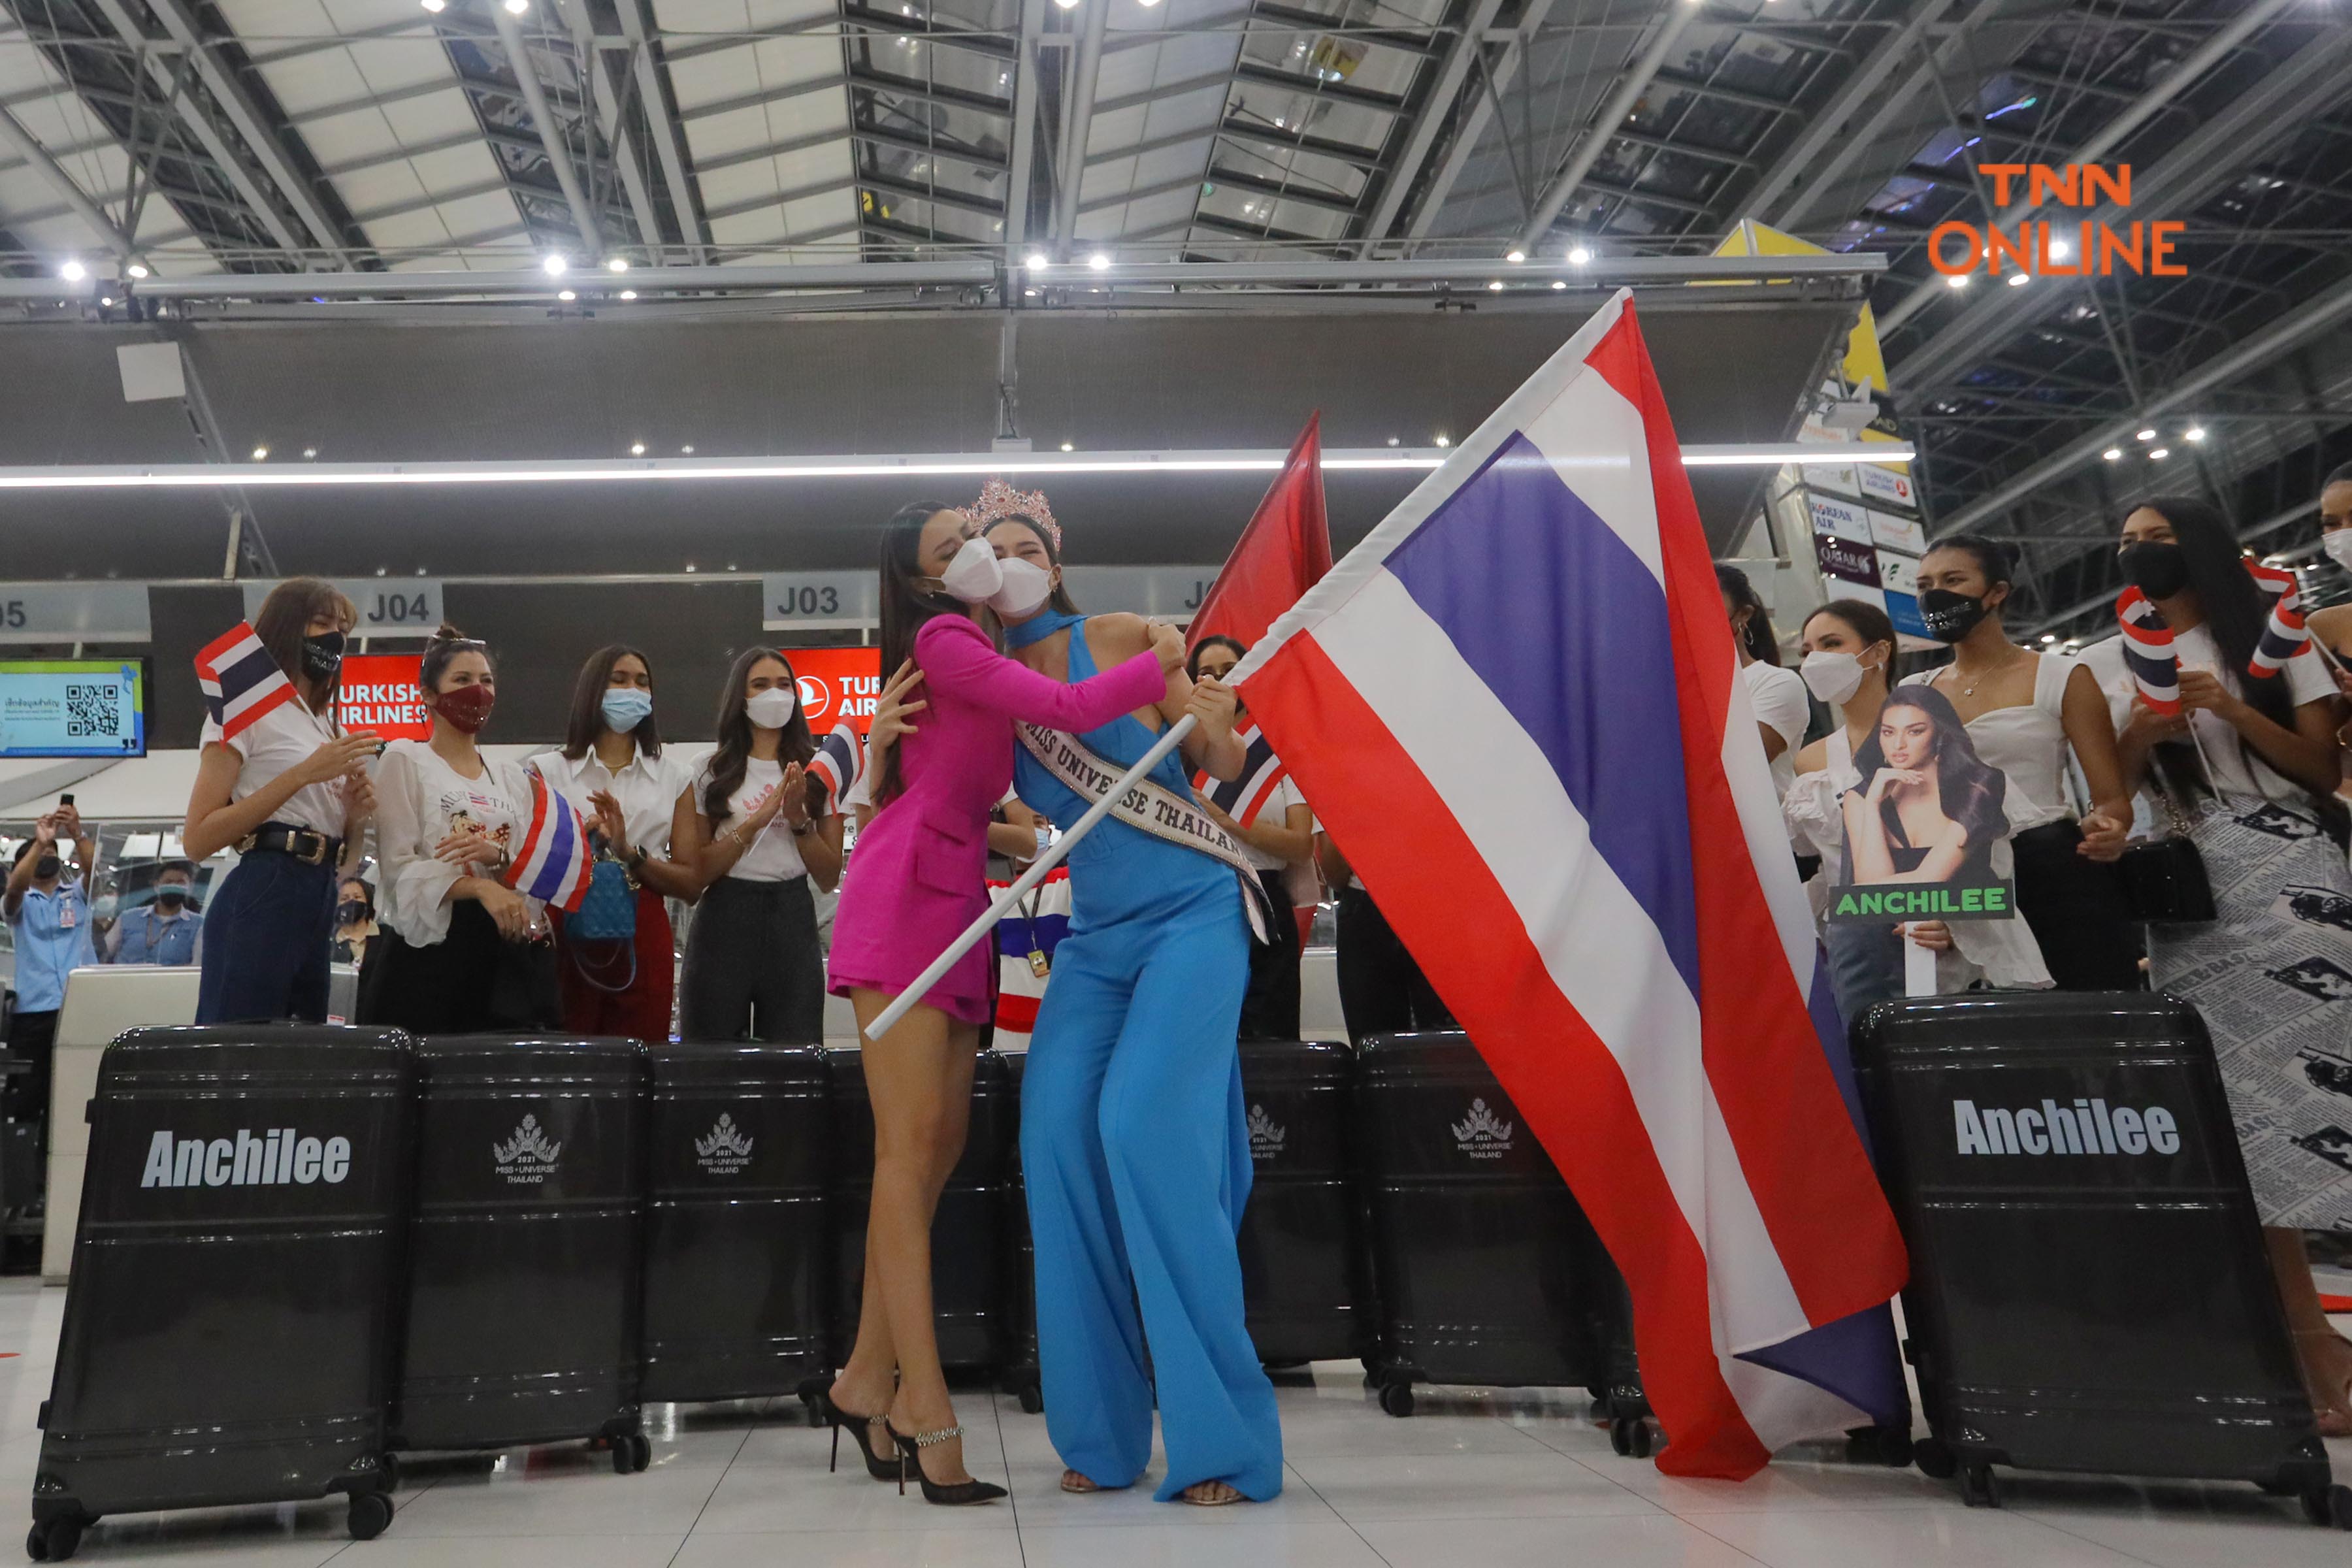 ประมวลภาพ “แอนชิลี” พาธงไทยลัดฟ้าสู่เวทีมิสยูนิเวิร์ส 2021